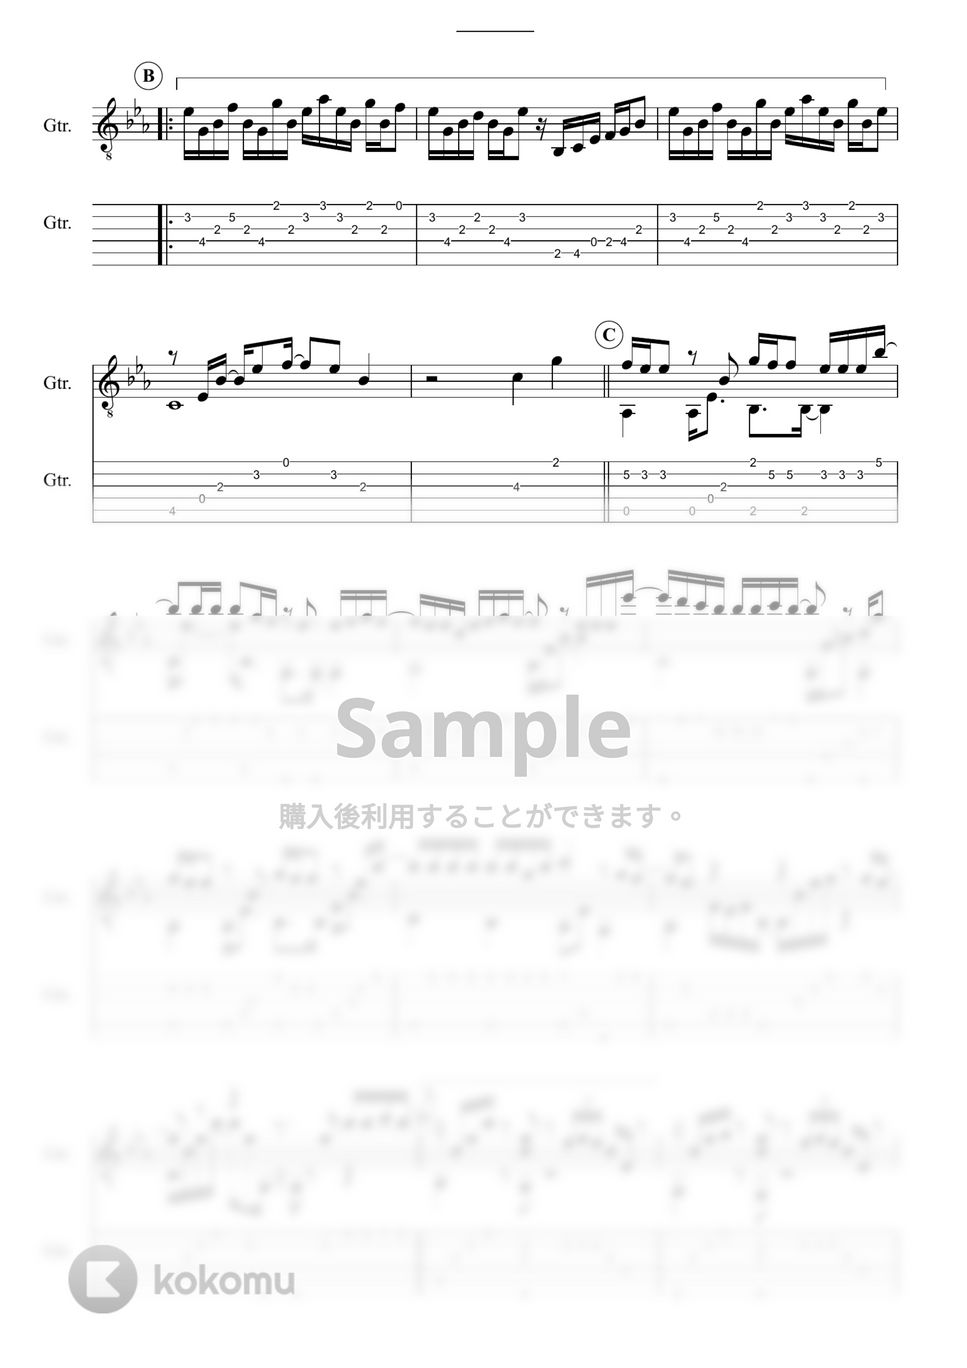 ヨルシカ - Yorushika on GUITAR (曲集・6曲収録) by 鷹城-Takajoe-